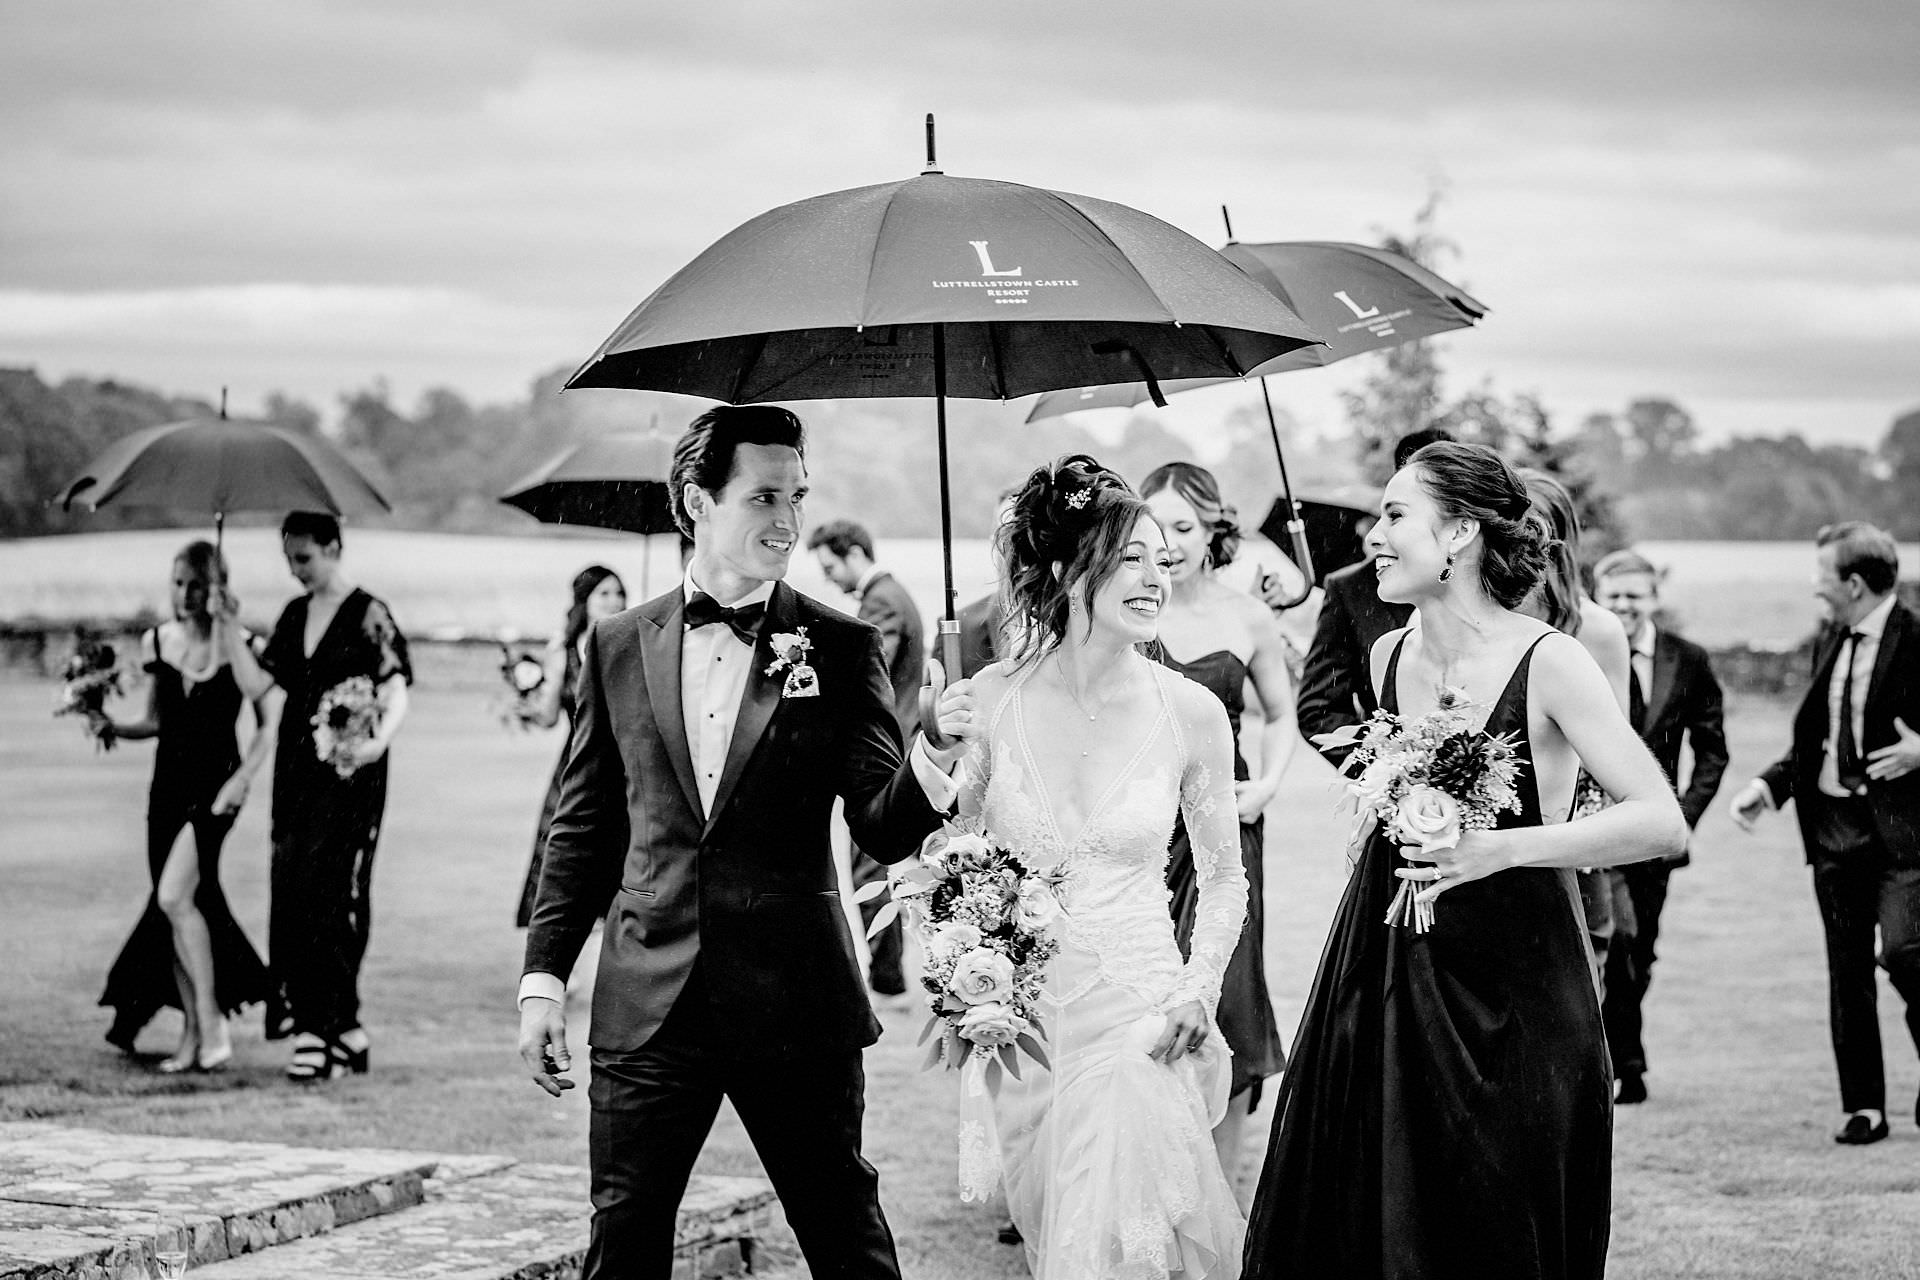 umbrellas, boquet, irish weather